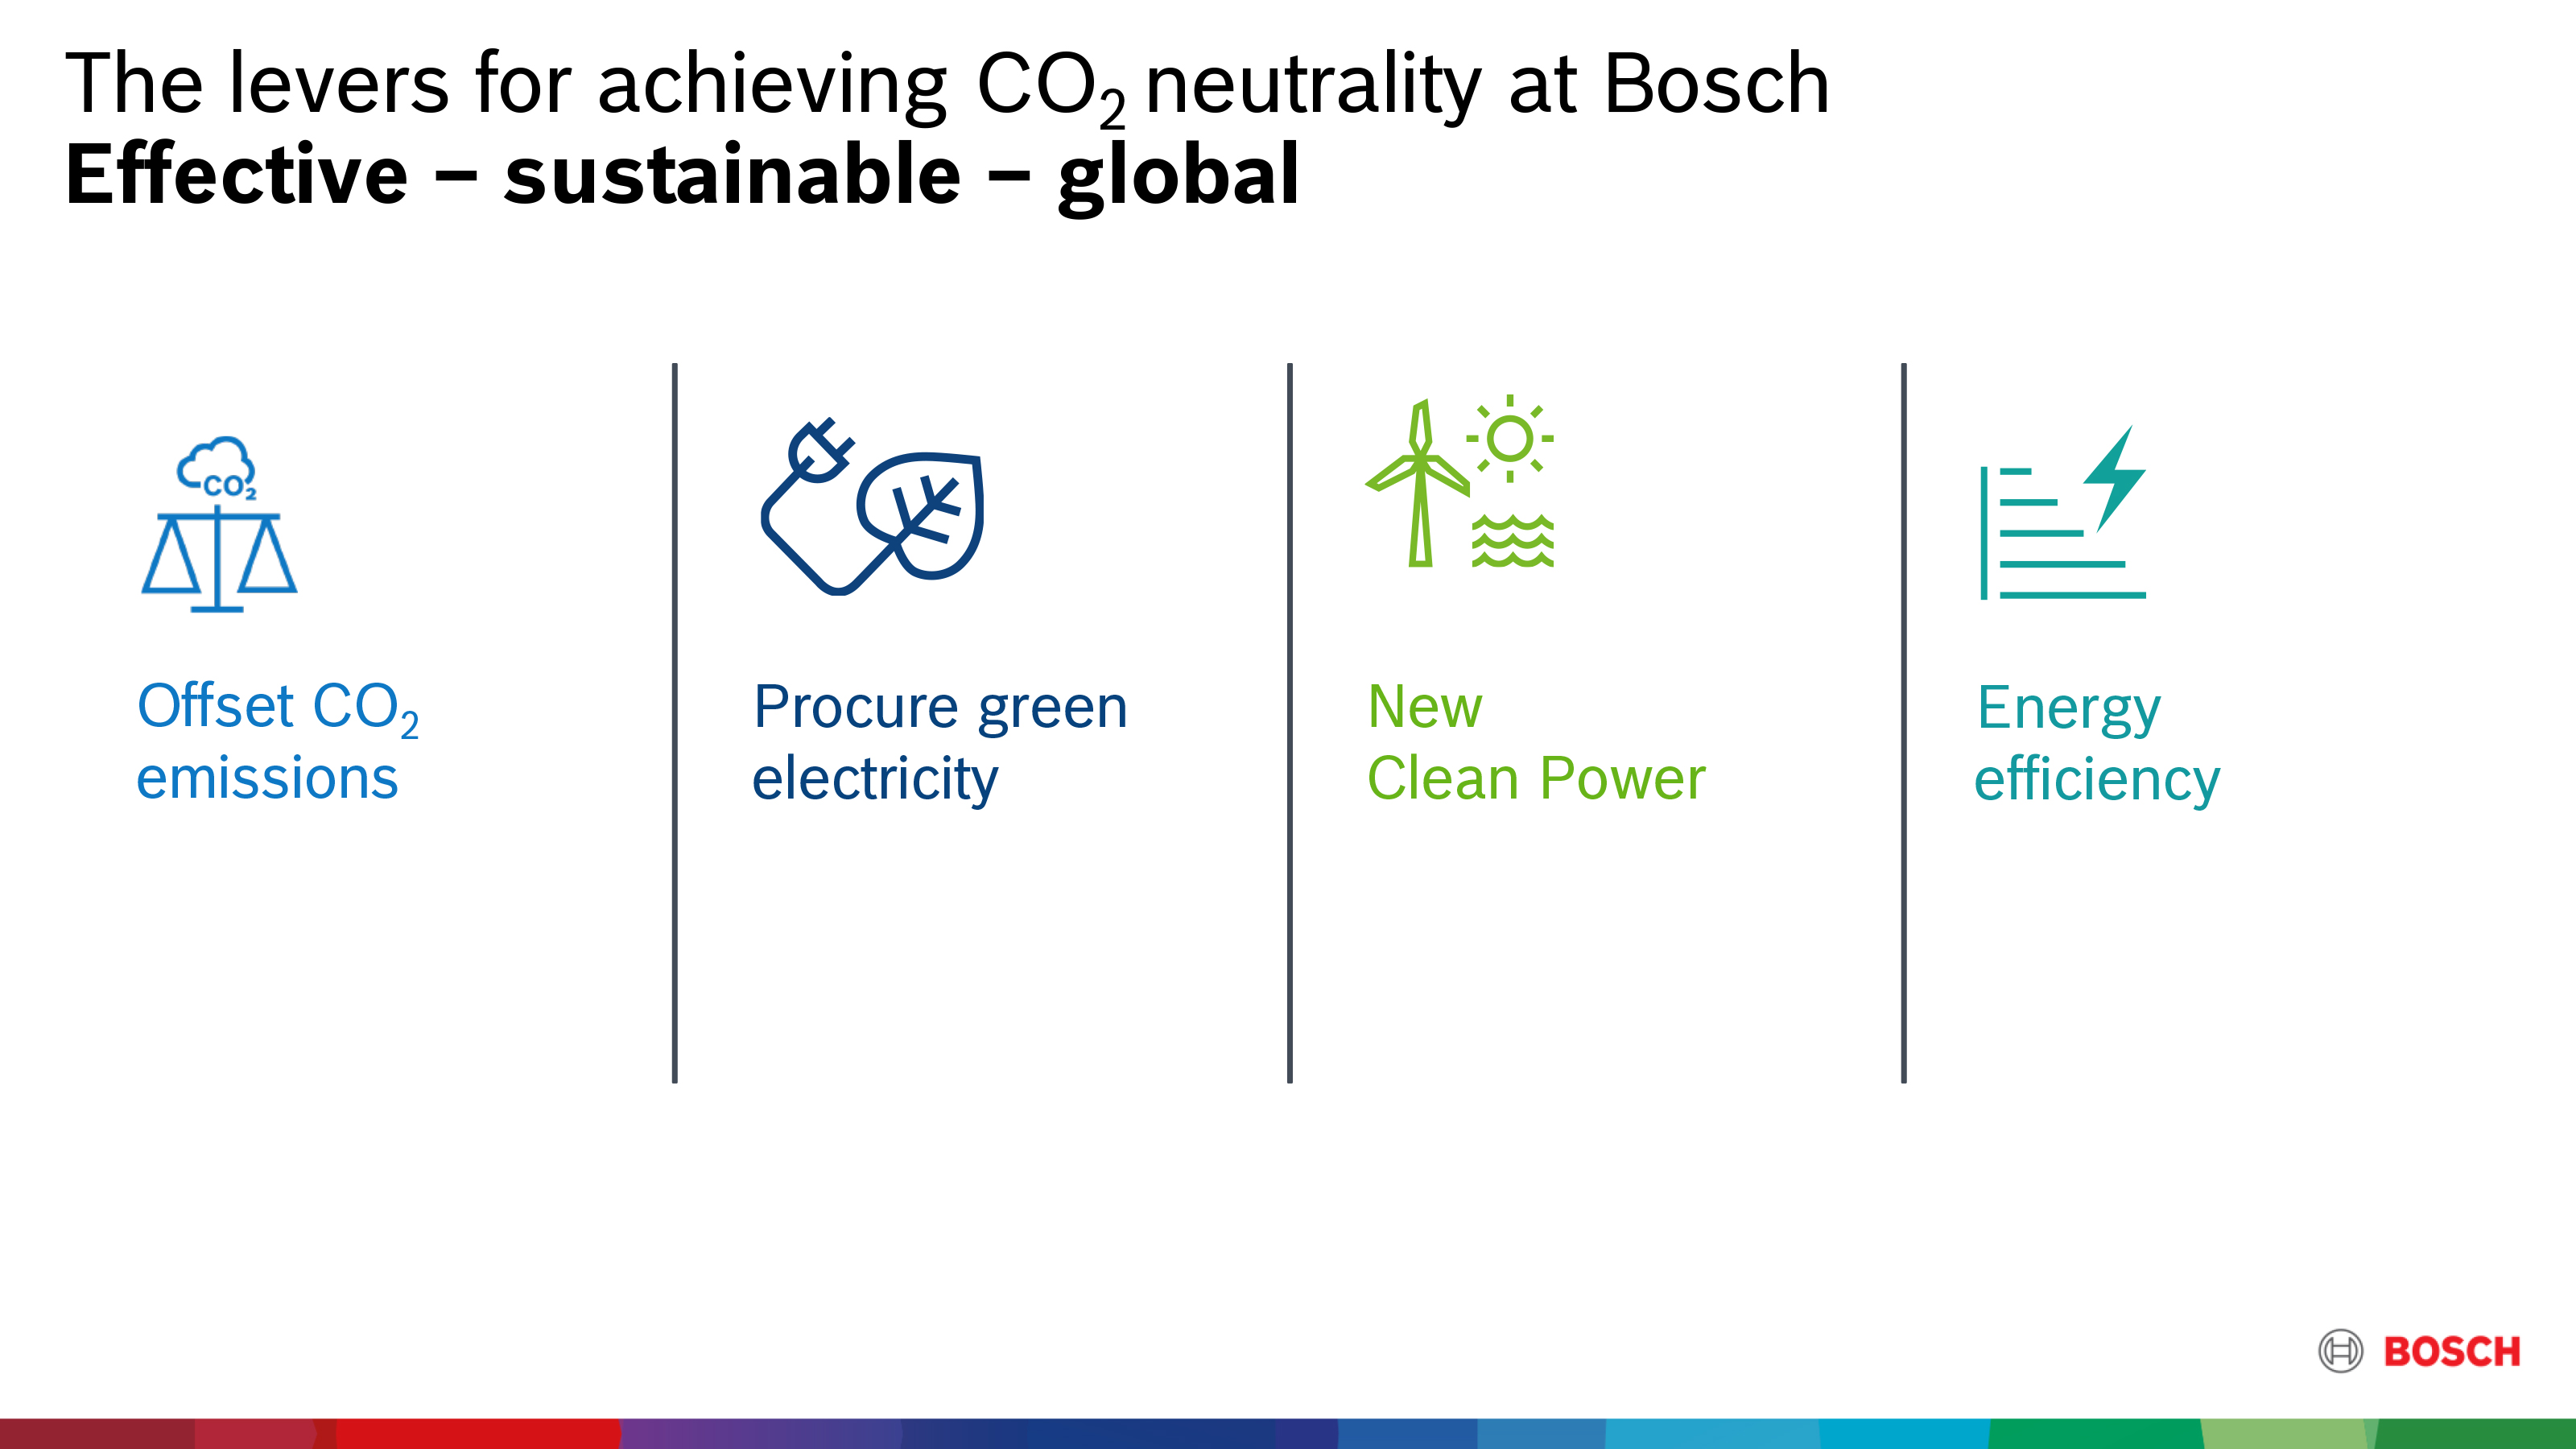 Les étapes pour atteindre la neutralité en CO2 chez Bosch